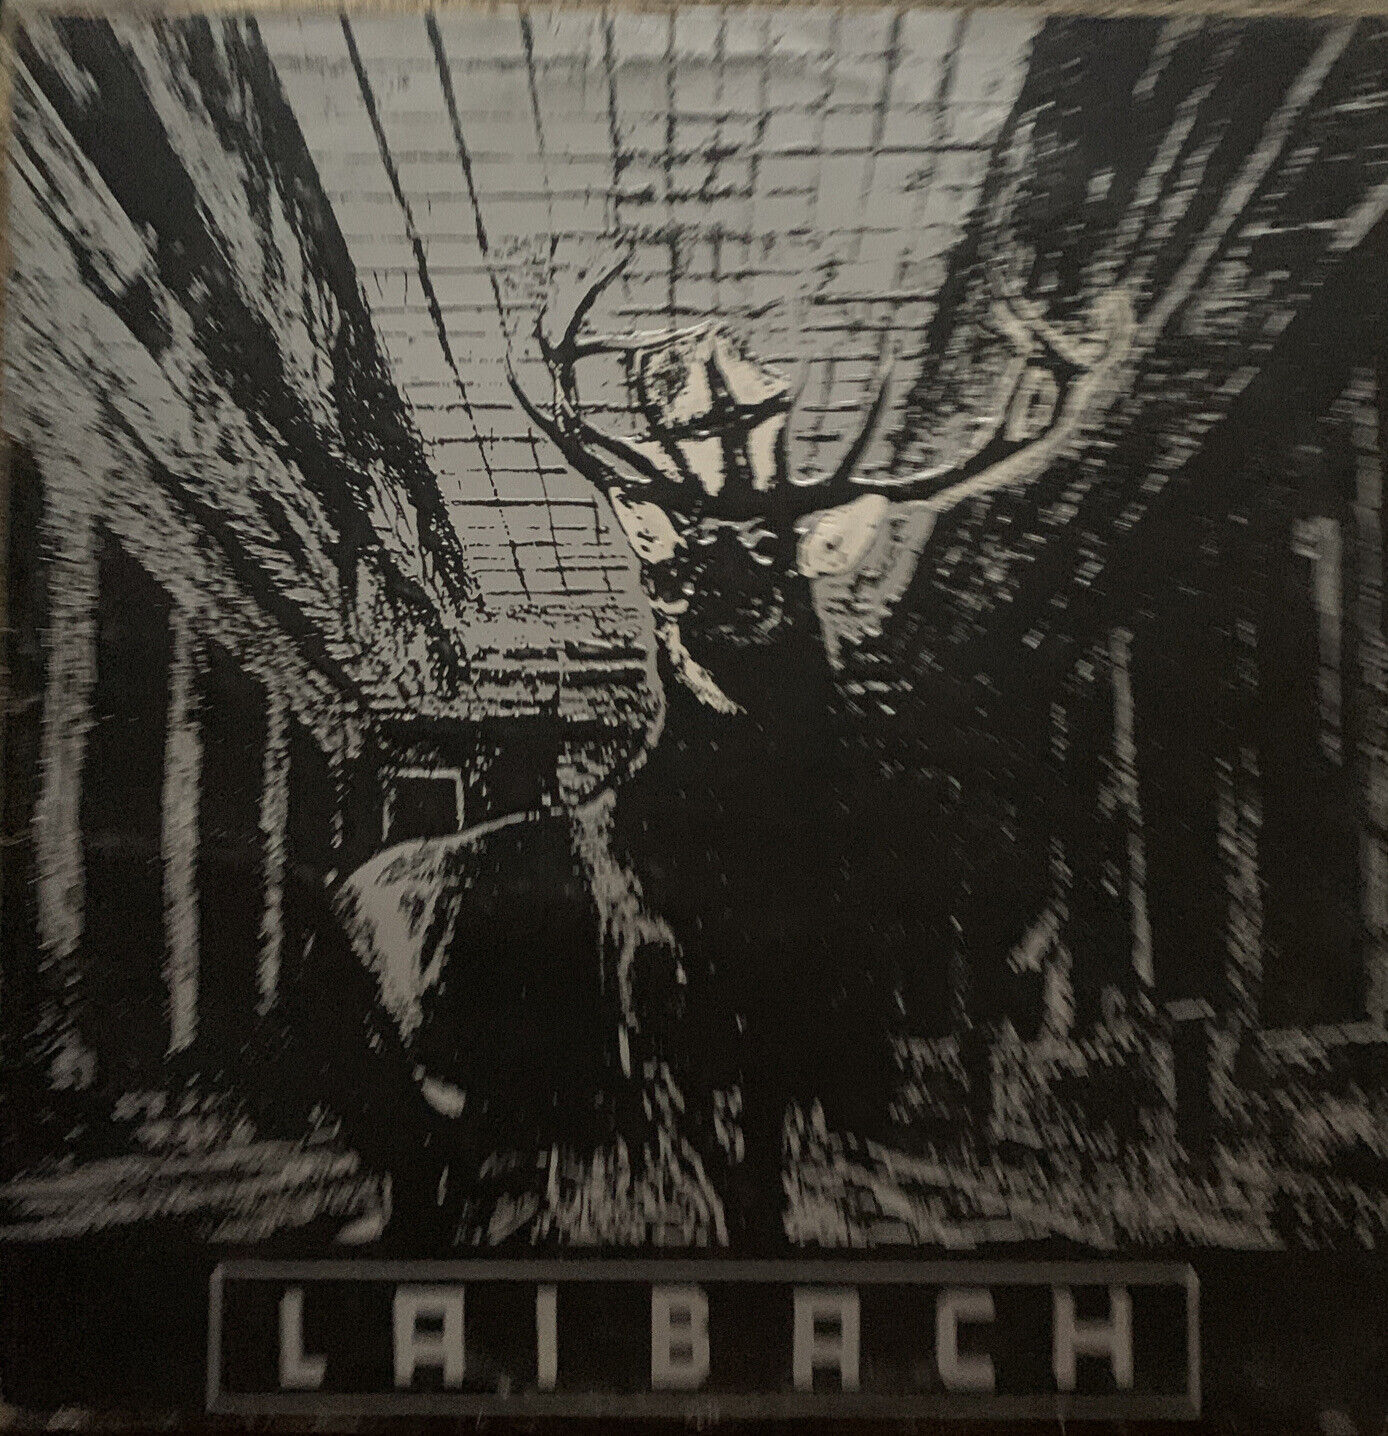 LAIBACH-Nova Akropola First Press 1986 UK Import LP